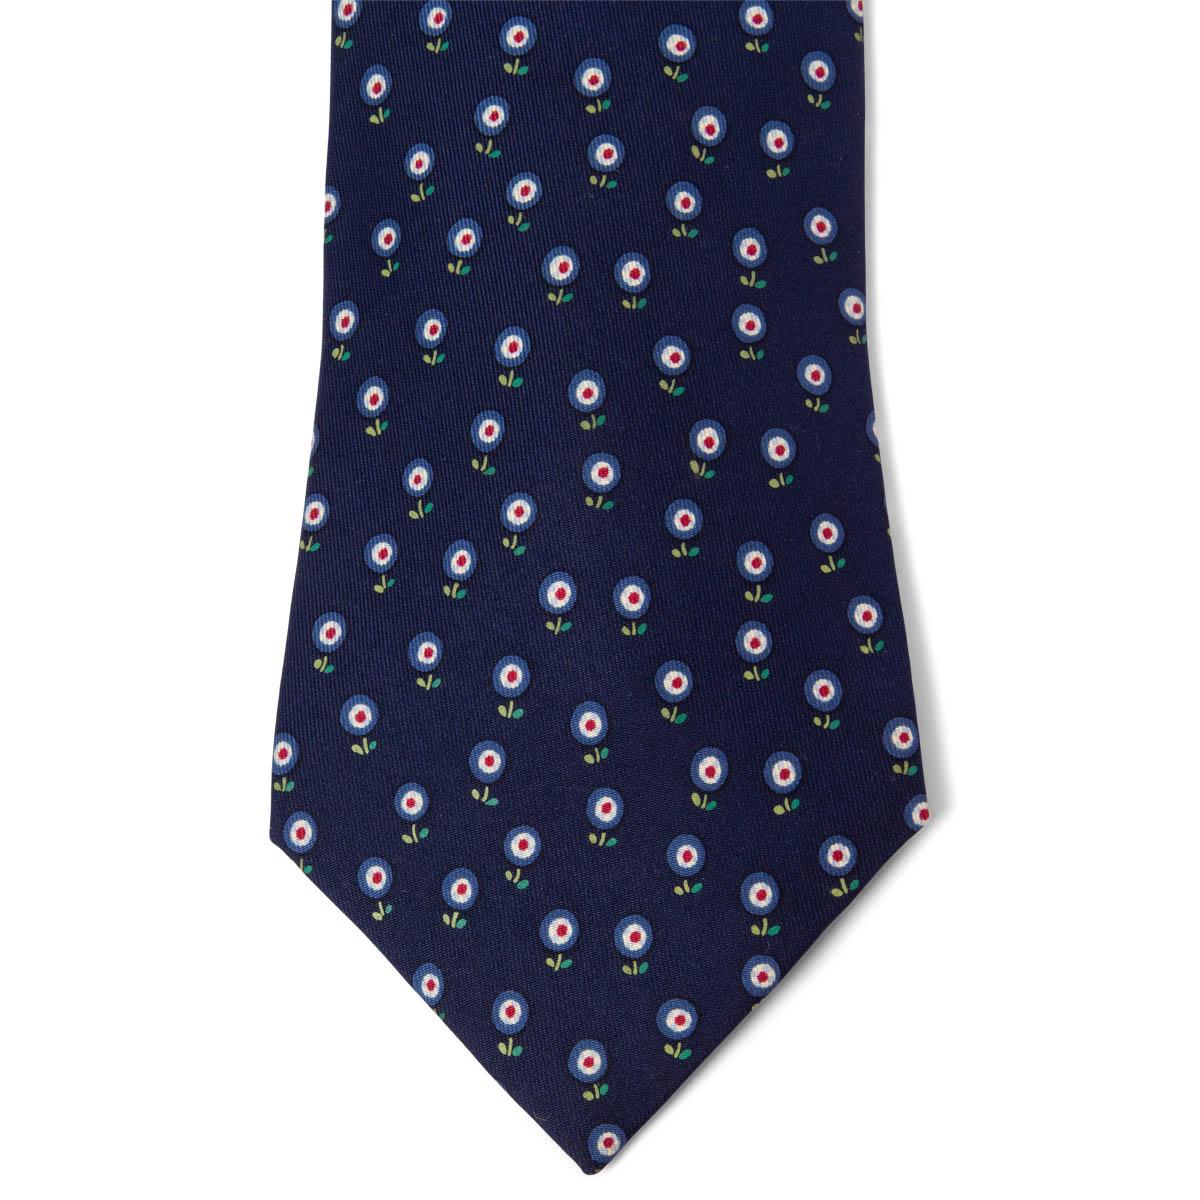 100% authentiques cravates Hermes Floral en twill de soie marine, vert, rouge et blanc (100%). A été porté et est en excellent état. Pas de boîte.

Mesures
Modèle	5024
Longueur	156cm (60.8in)
Point le plus large	9cm (3.54in)

Toutes nos annonces